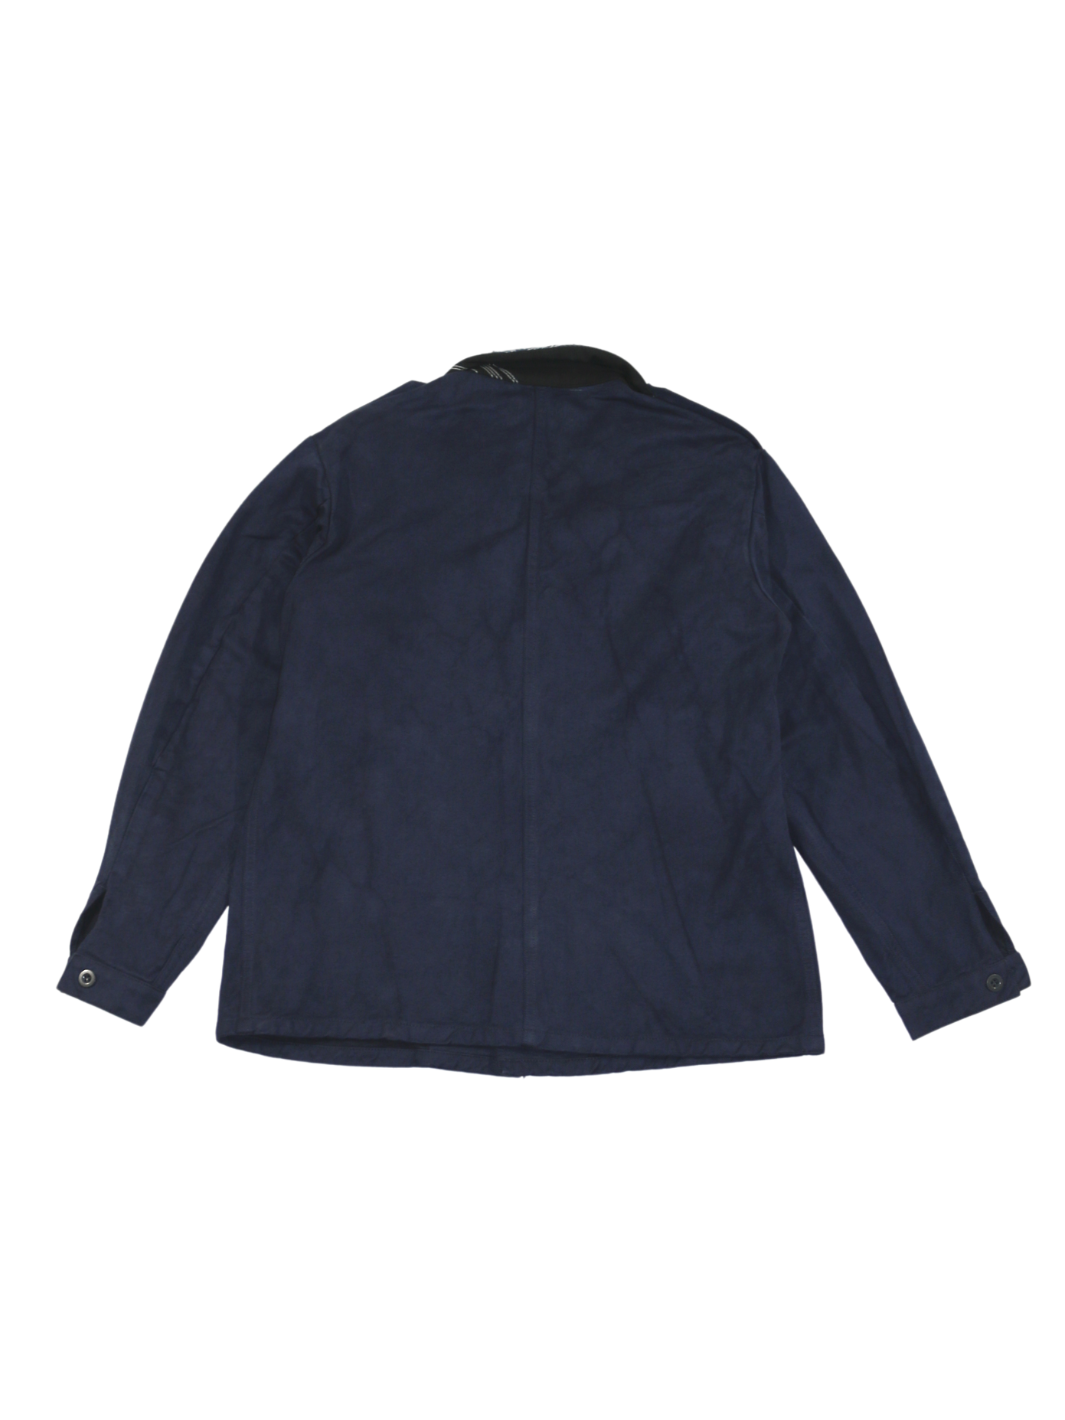 Herren Vintage Military Jacket dunkelblau überfärbt schlichter Rücken Kragen aus handgemachten Patchwork ersetzt Größe L upcycled